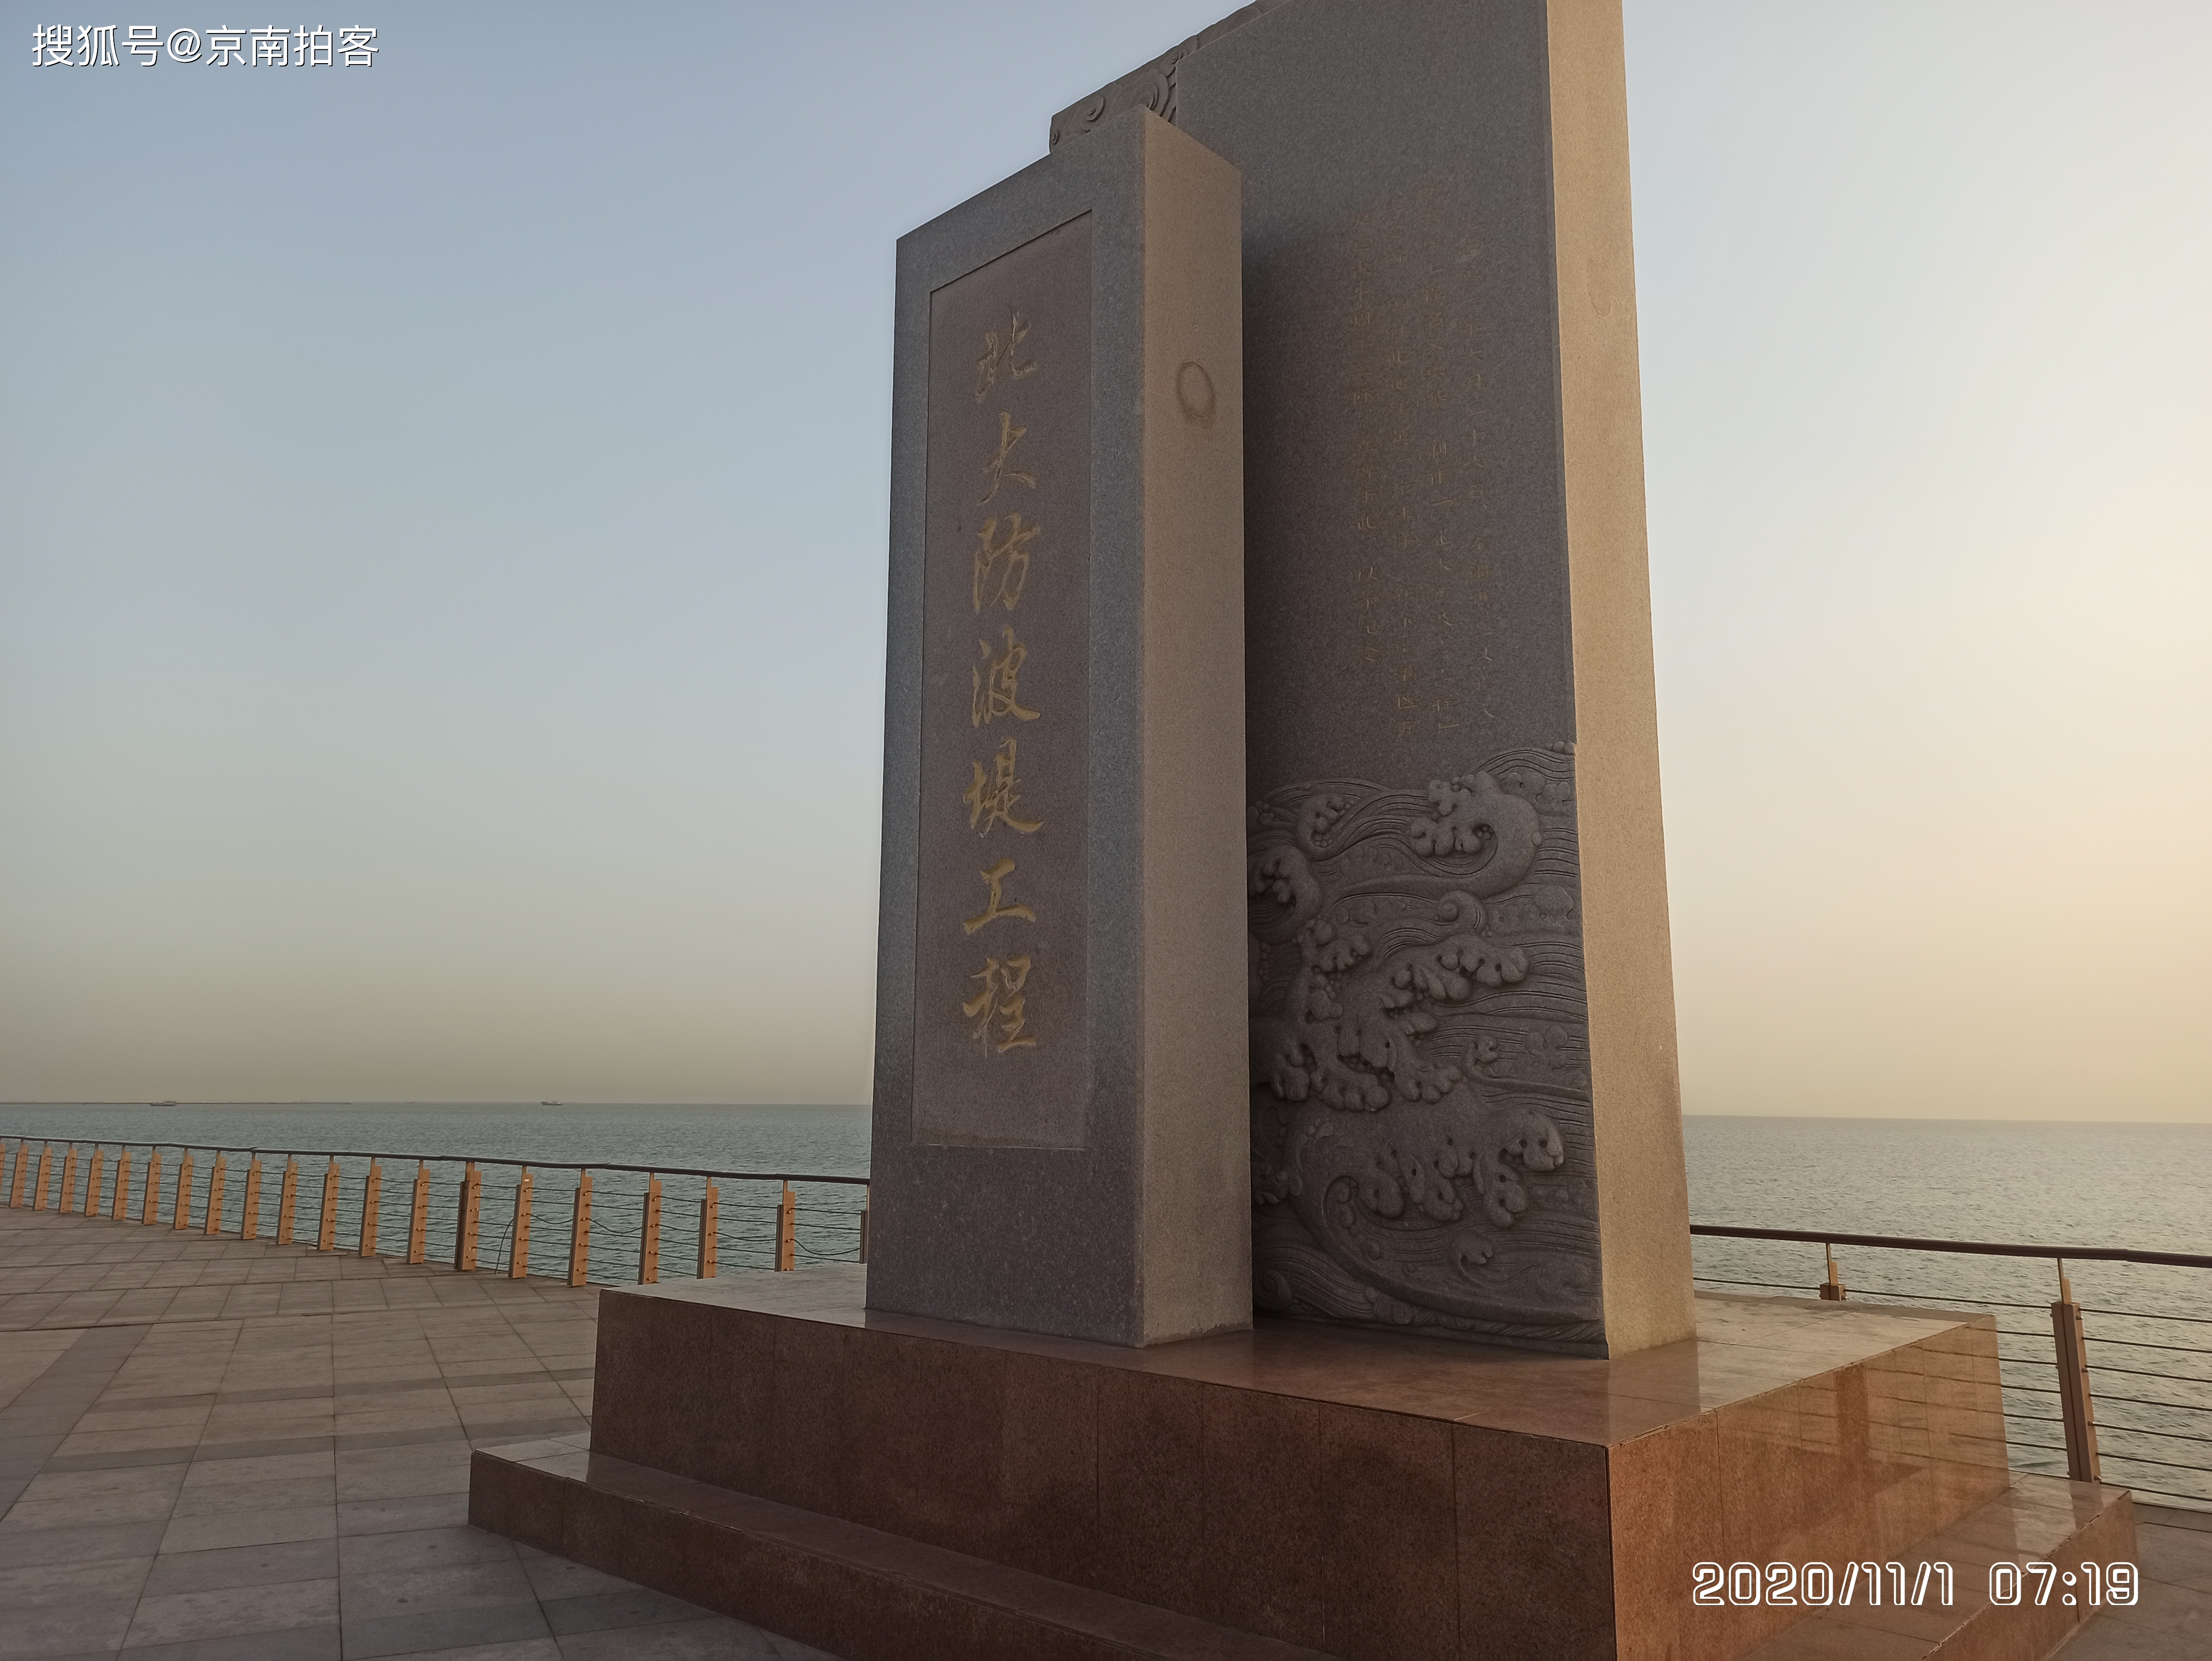 天津滨海新区的东疆港开发纪念公园